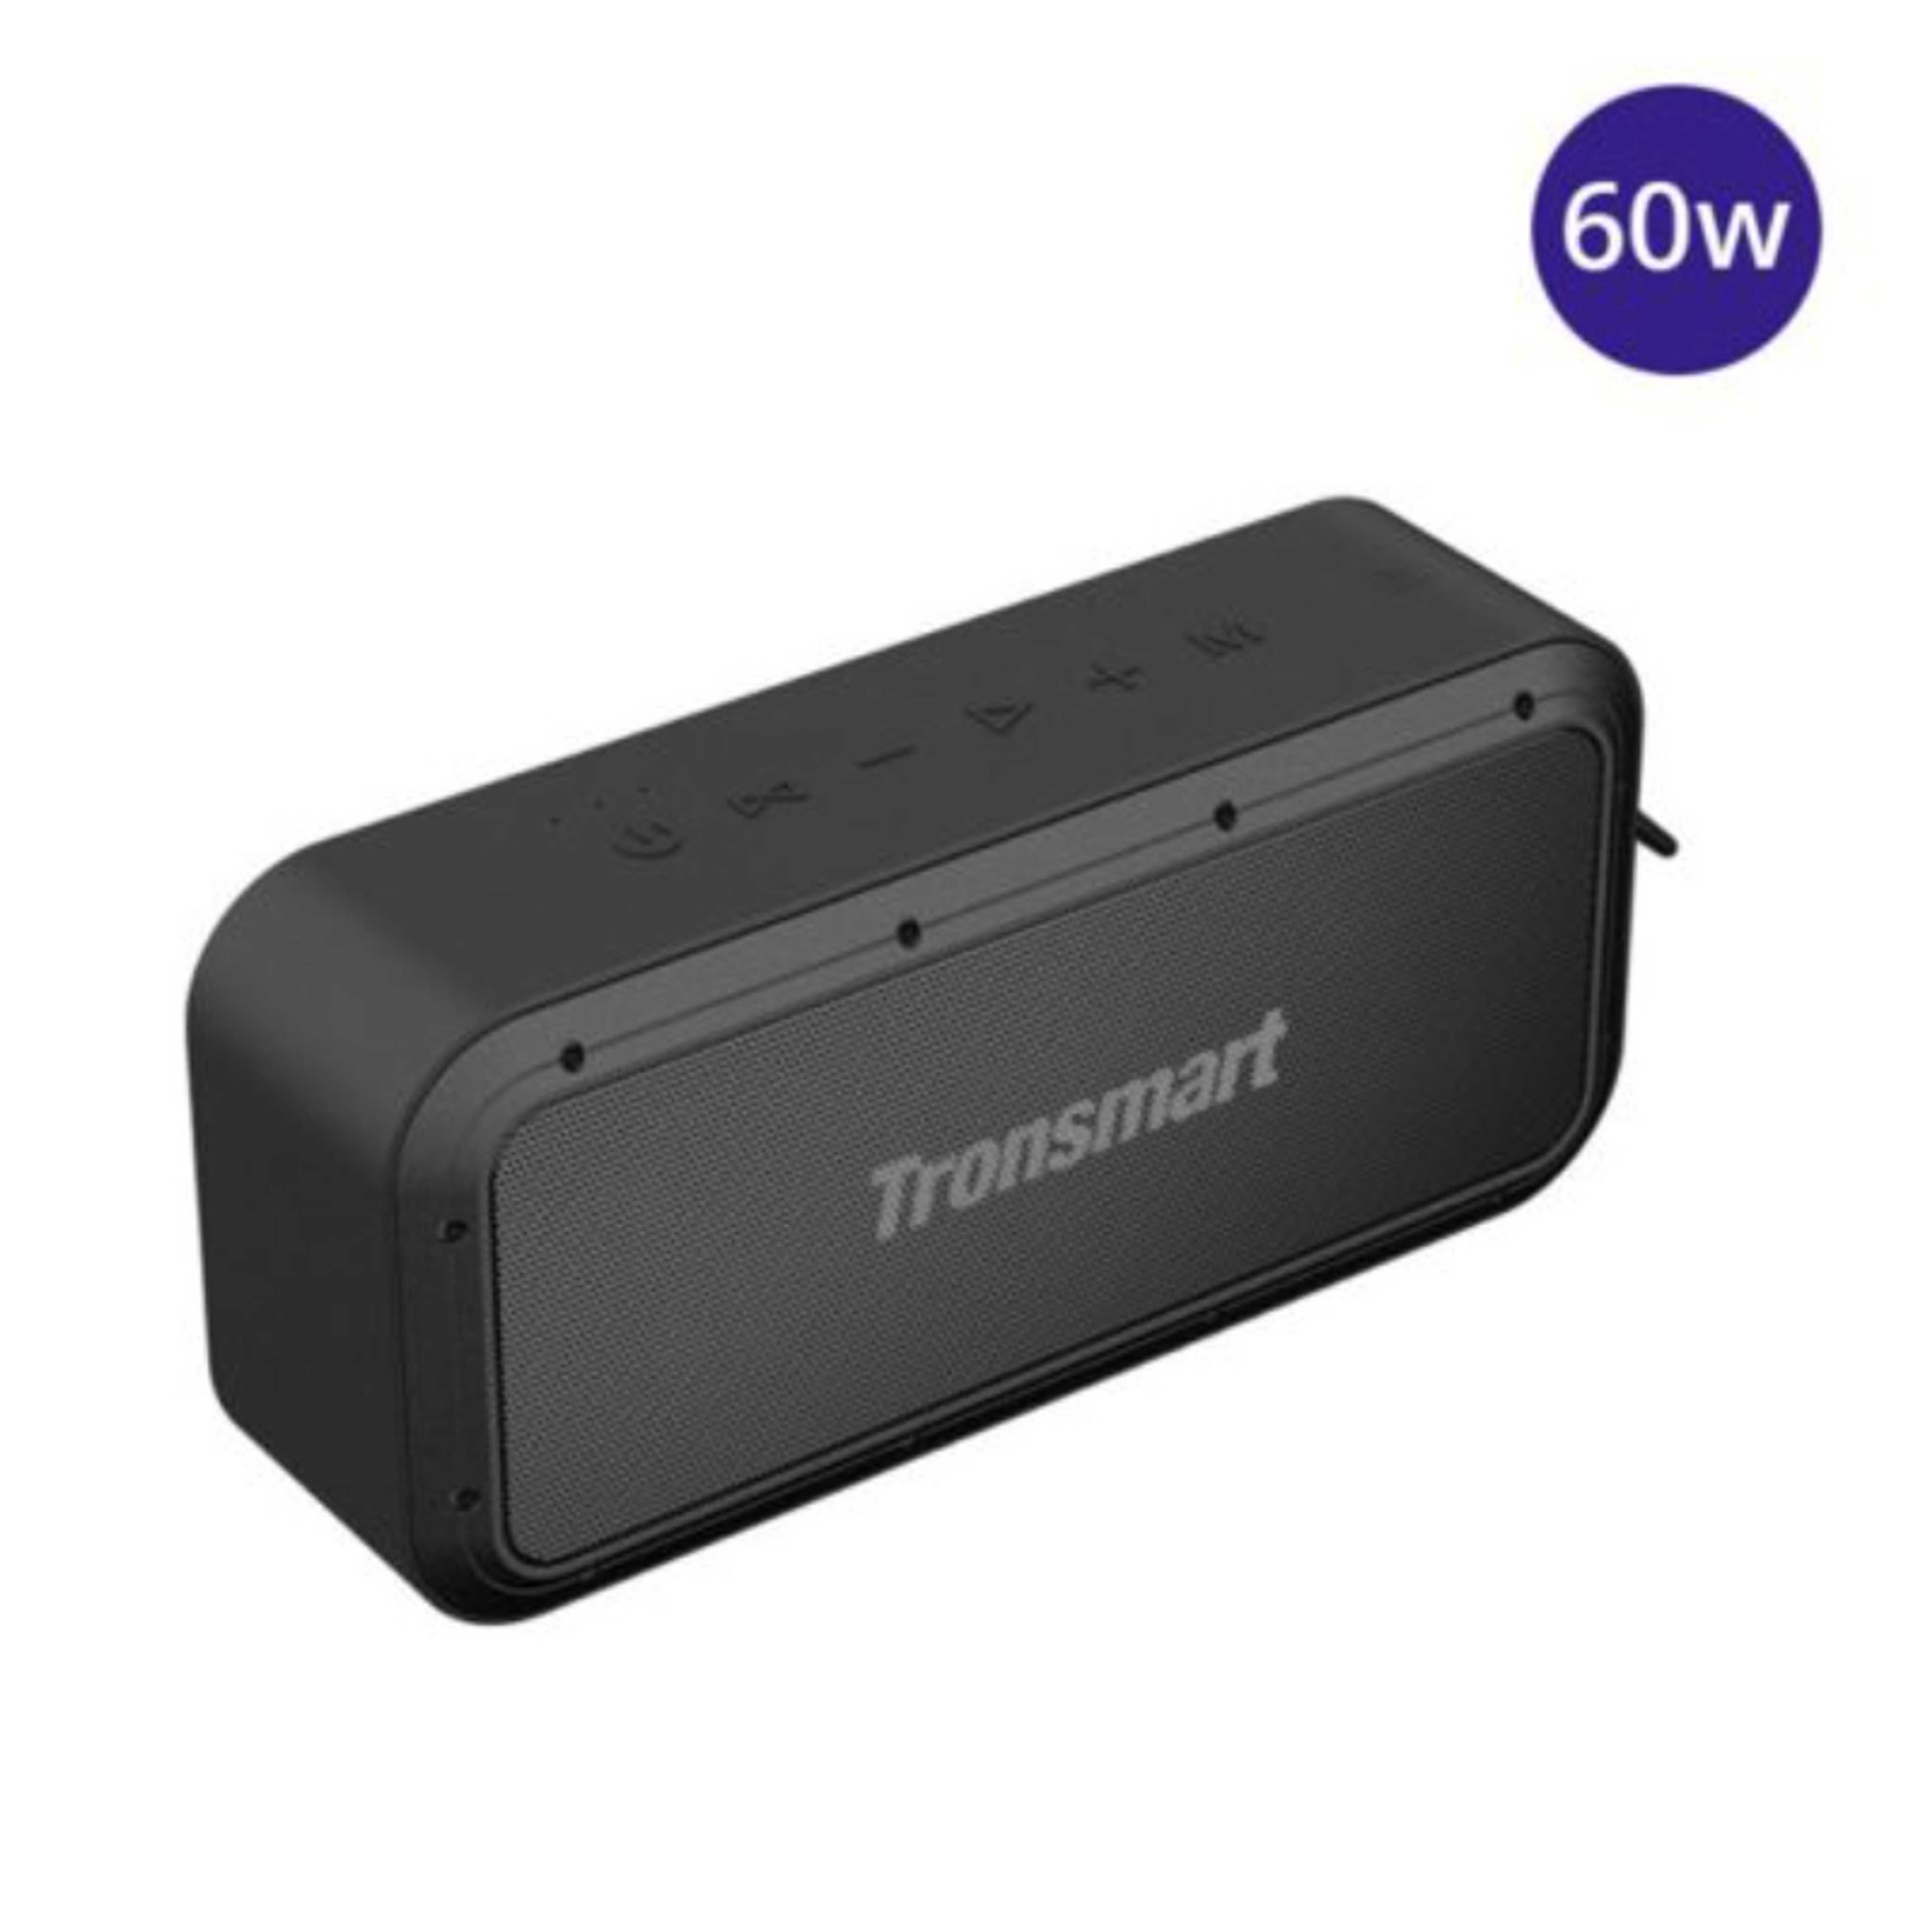 Tronsmart Force Pro 60W Bluetooth Speaker Wireless Speaker with IPX7 Waterproof, Free Storage Bag, Support sync 100+ speaker